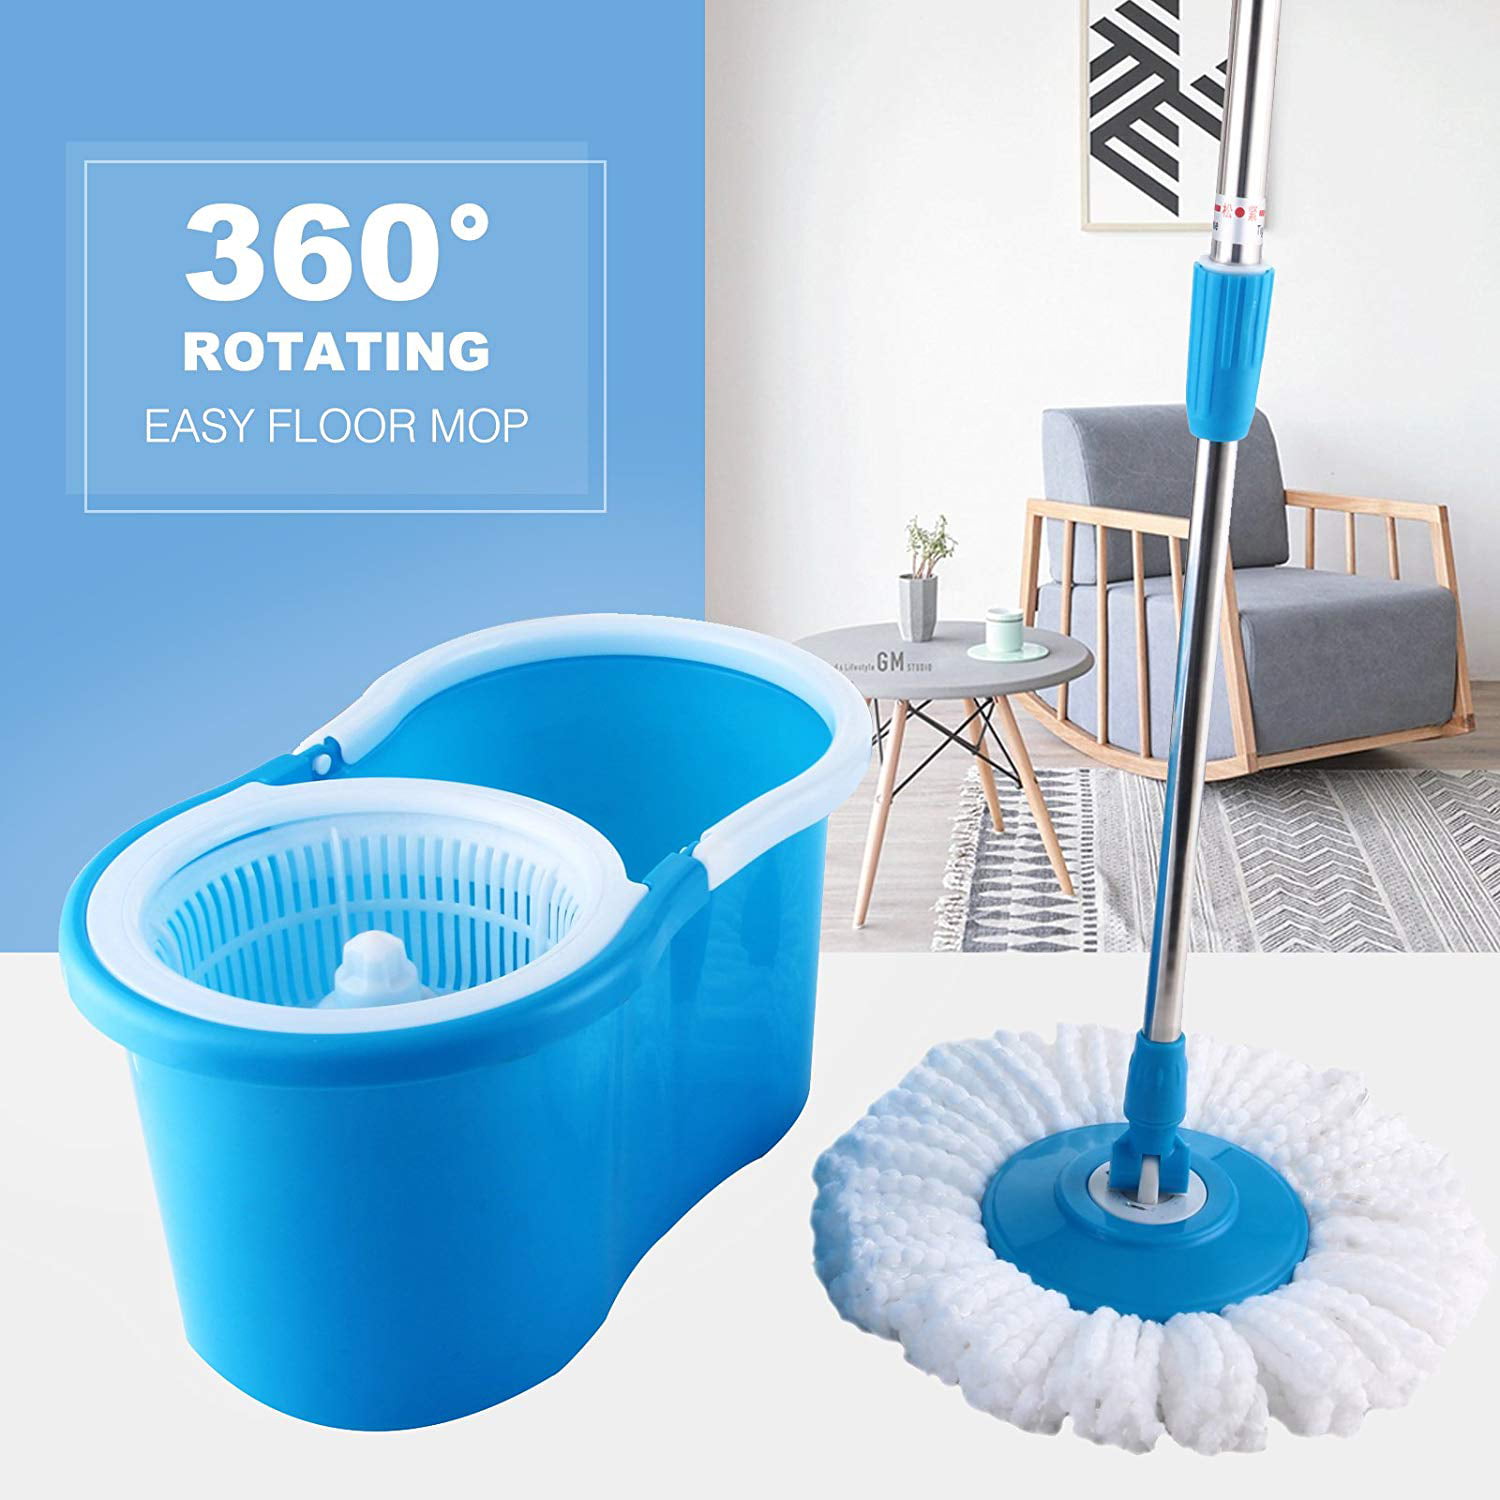 360° Rotating Head Easy Magic Floor Mop Bucket 2 Head Microfiber Spinning 